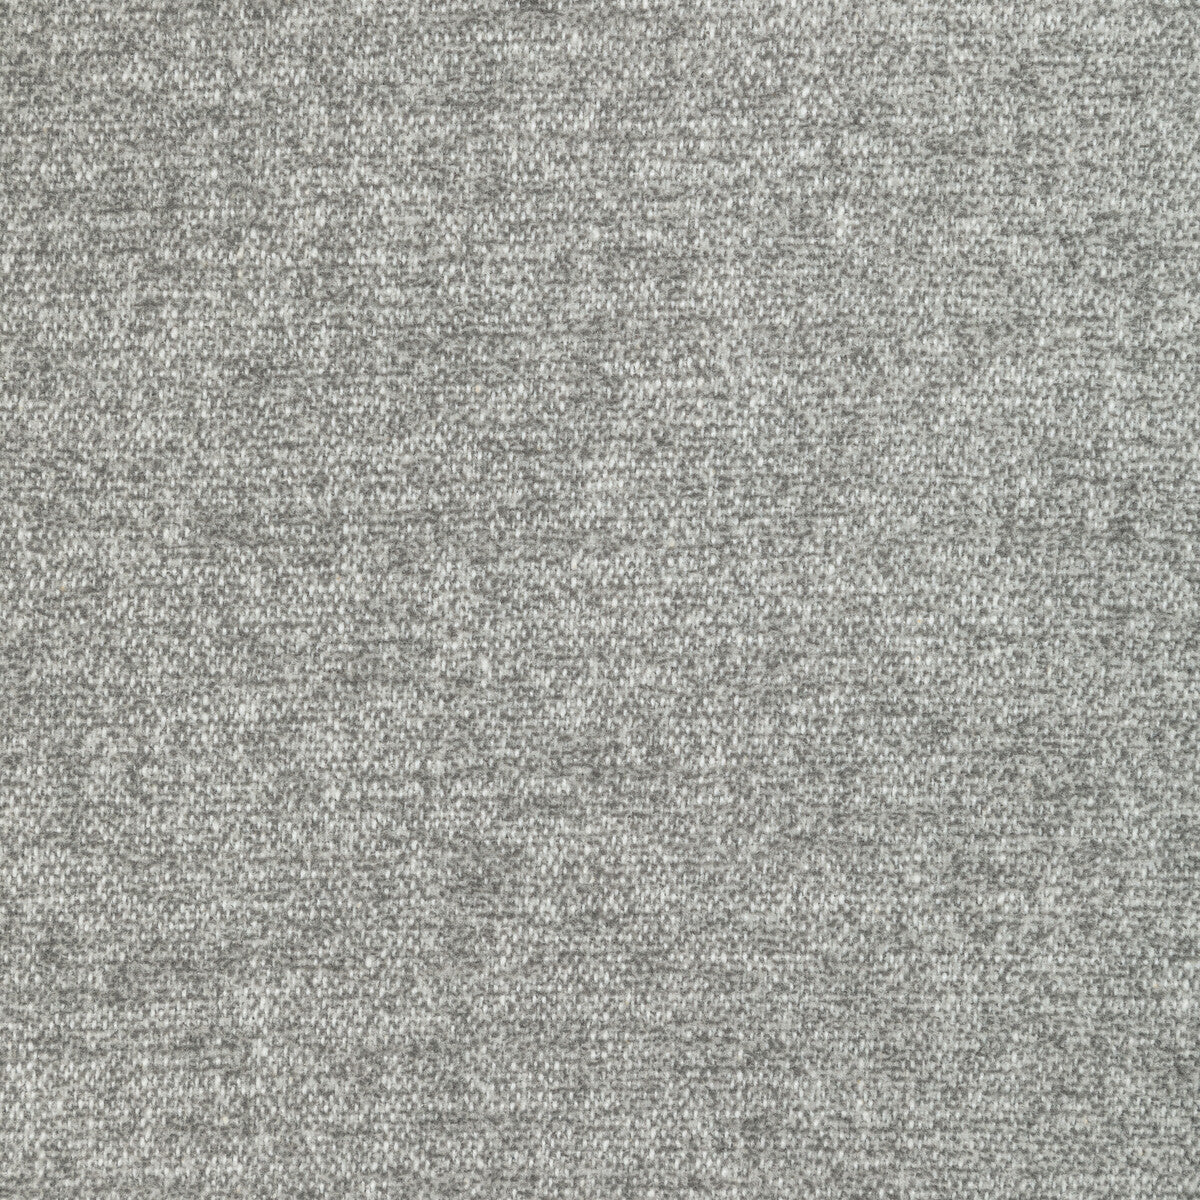 Kravet Basics fabric in 36373-11 color - pattern 36373.11.0 - by Kravet Basics